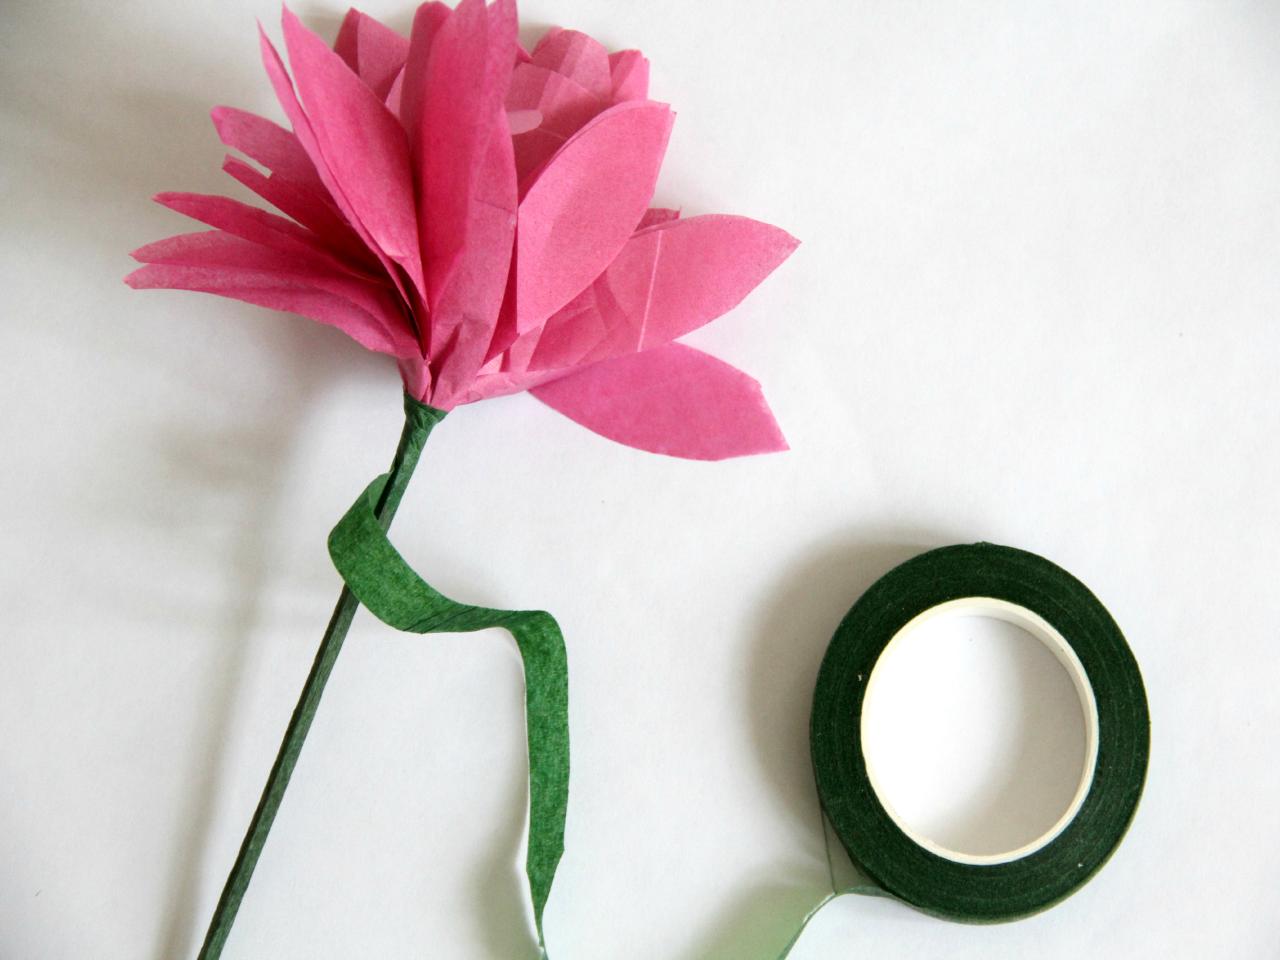 3 Ways to Make Tissue Paper Flowers | HGTV